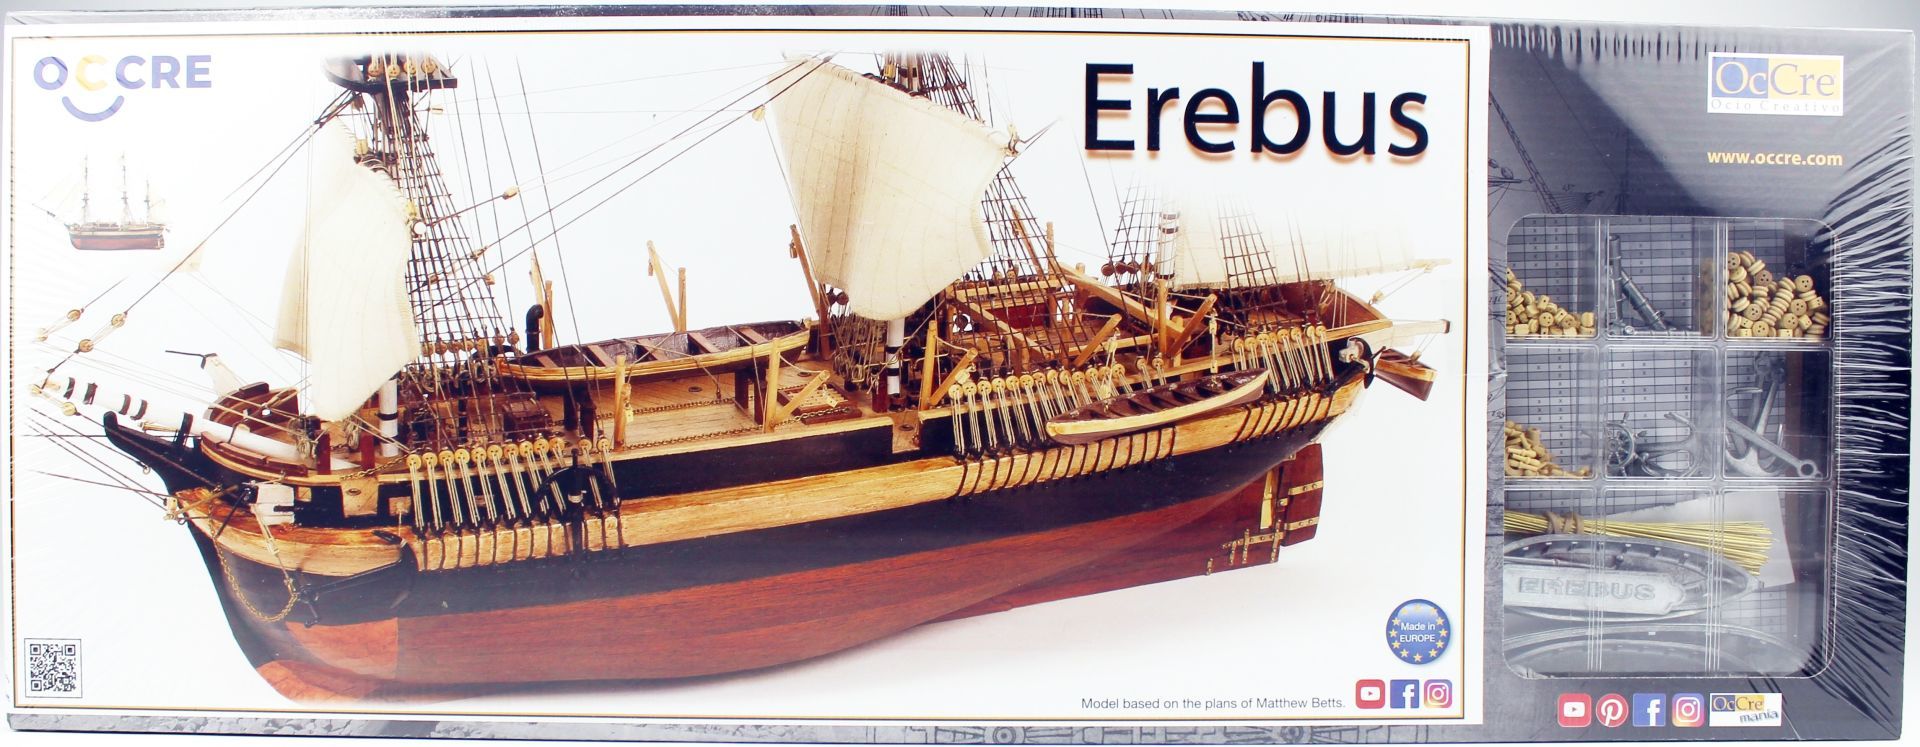 Occre 12009 1/75 Ölçek, Ölçek HMS Erebus Yelkenli Tekne Ahşap Model Kiti